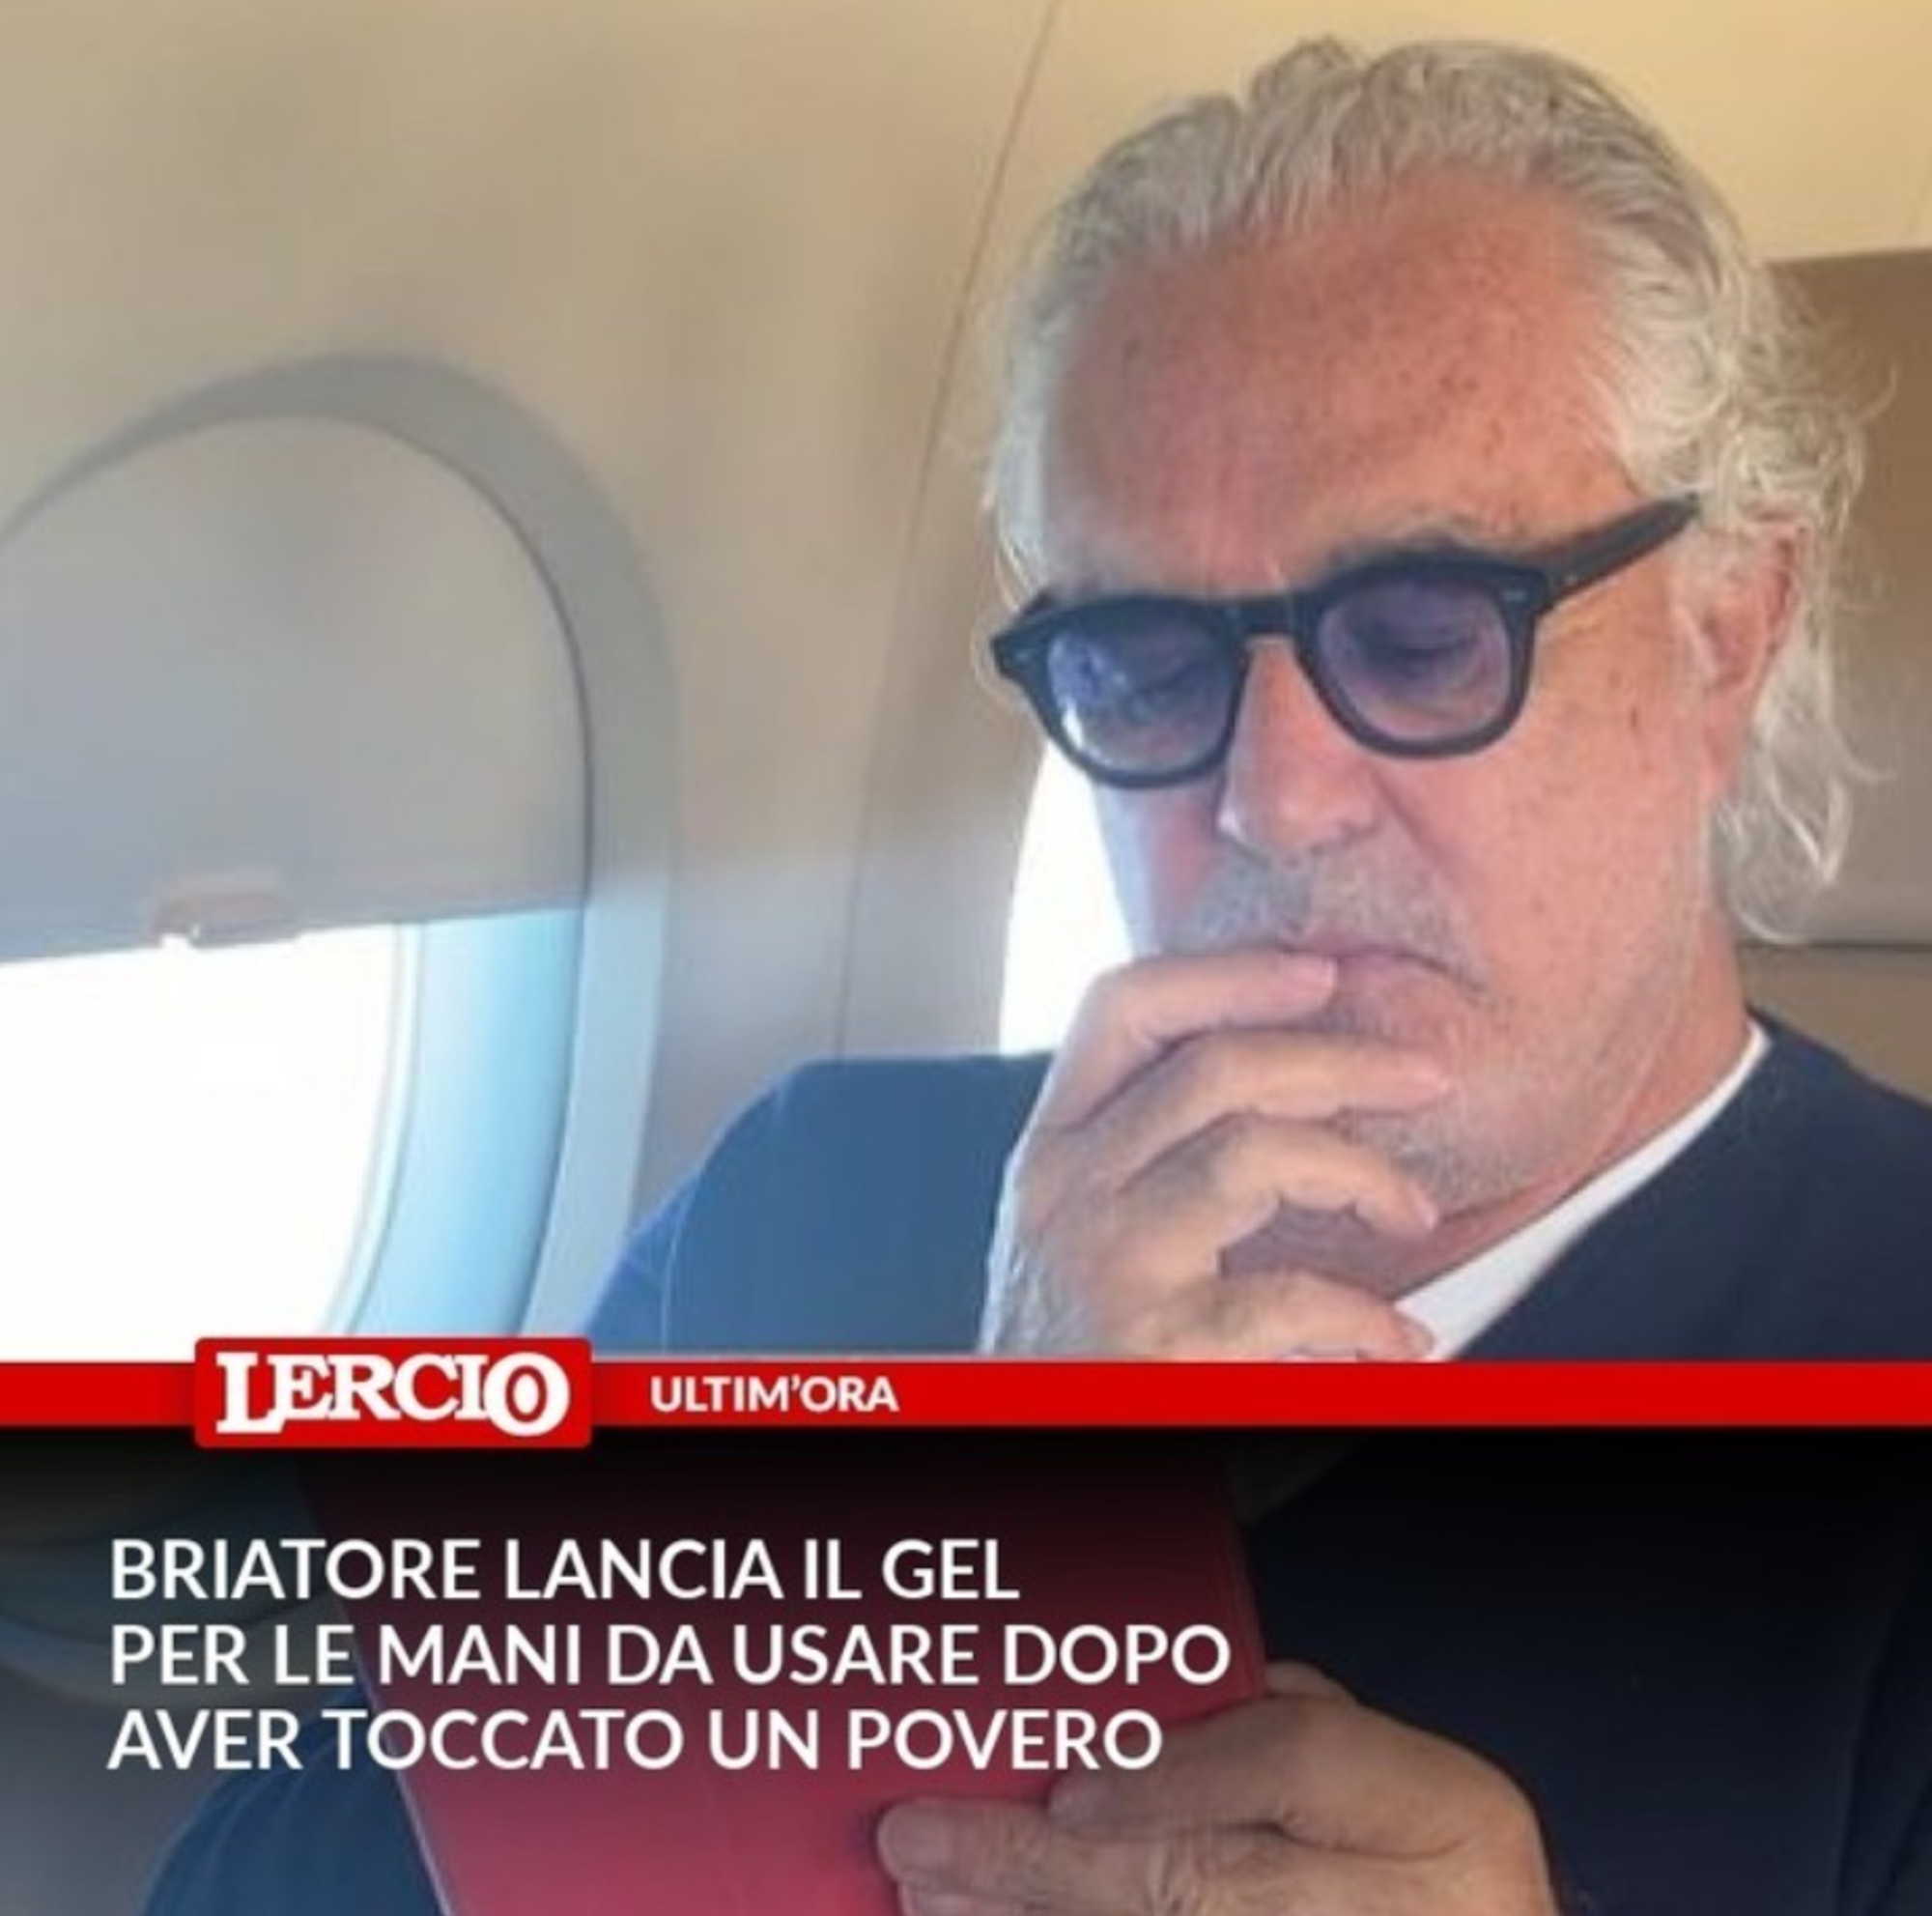 Flavio Briatore parodizzato su Lercio